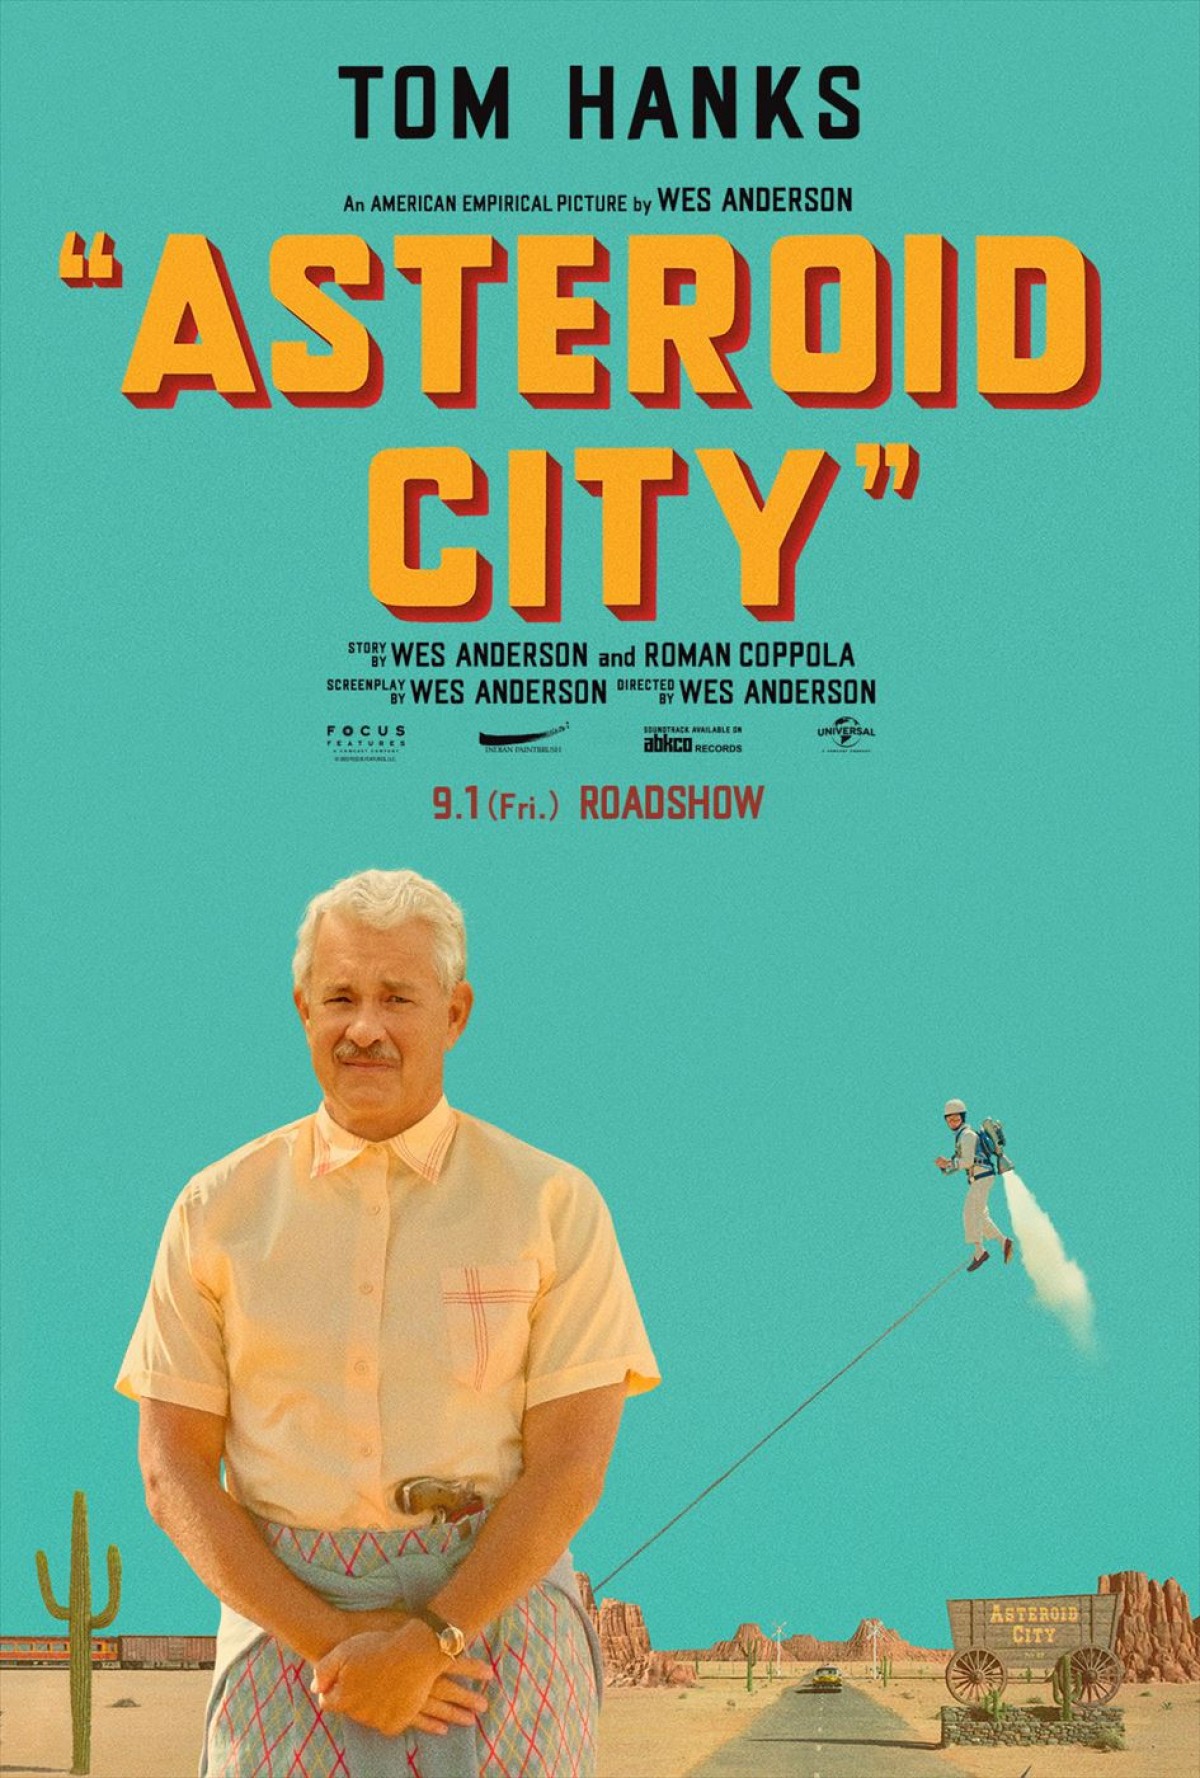 映画『アステロイド・シティ』、1950年代アメリカのレトロ感漂うスカーレット・ヨハンソンらのキャラポス到着